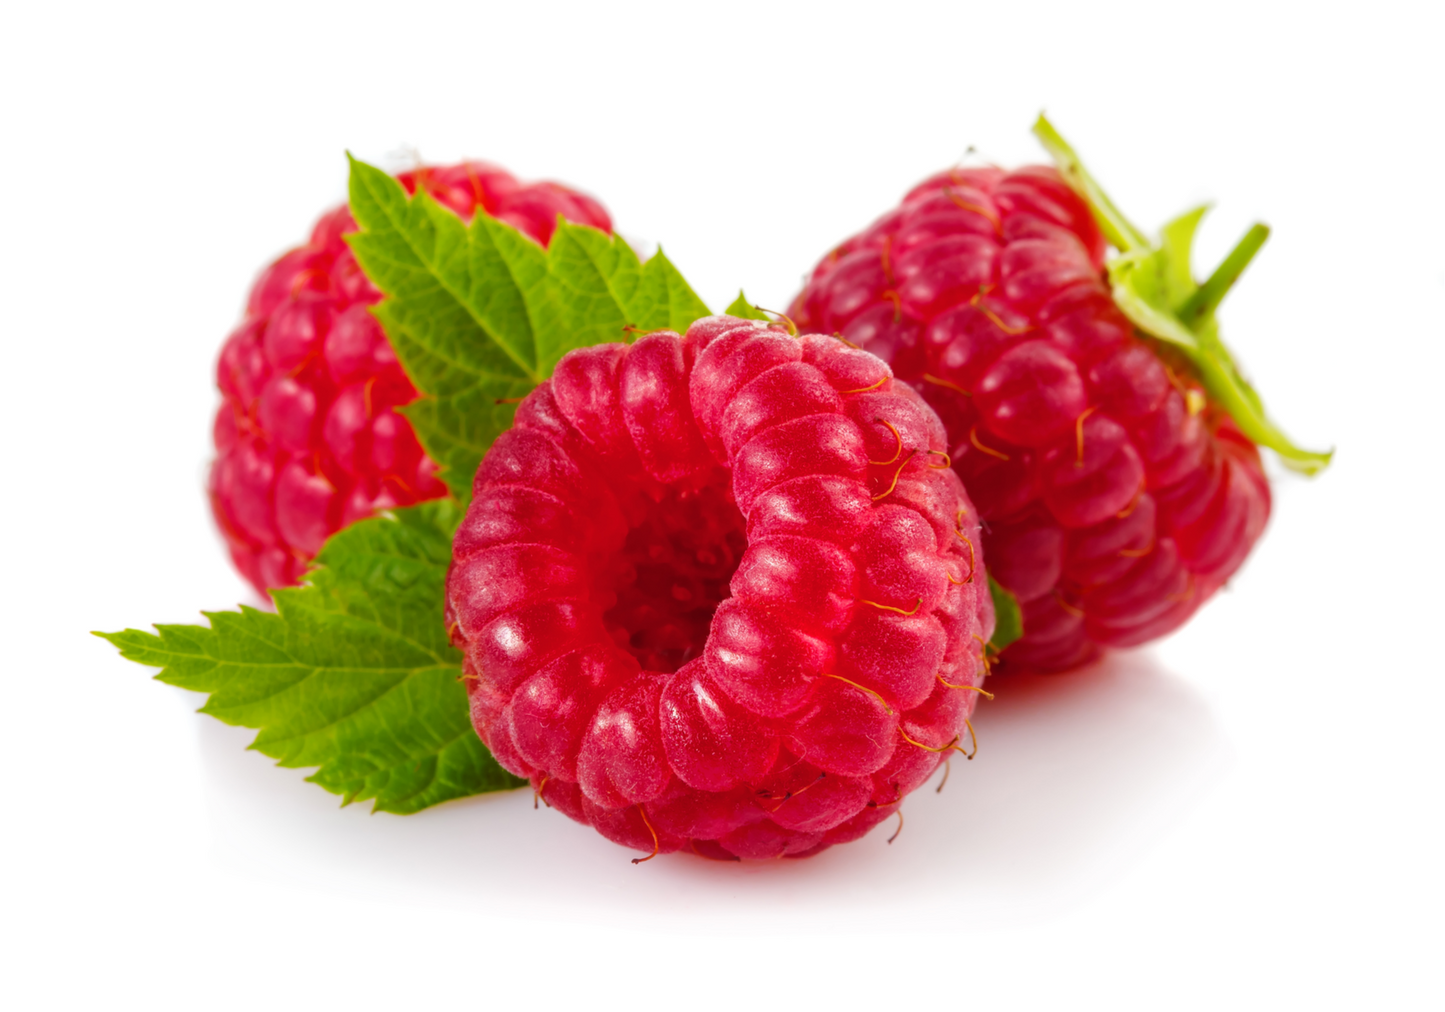 Fruit Plants - Raspberry 'Cascade Delight' - 2 x Full Plants in 3 Litre Pots